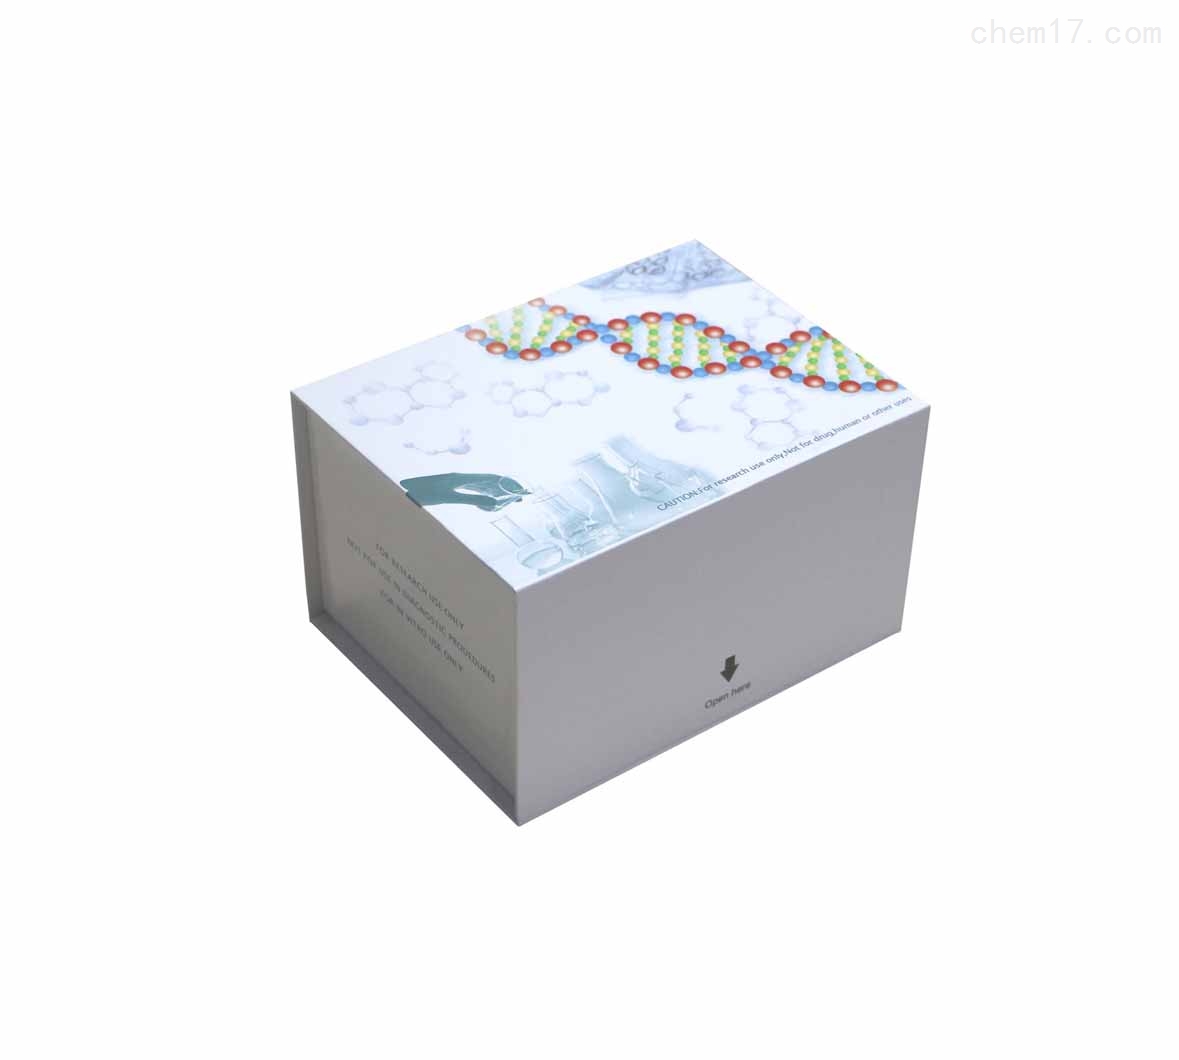 人神经元凋亡抑制蛋白(NAIP)ELISA试剂盒质量保证